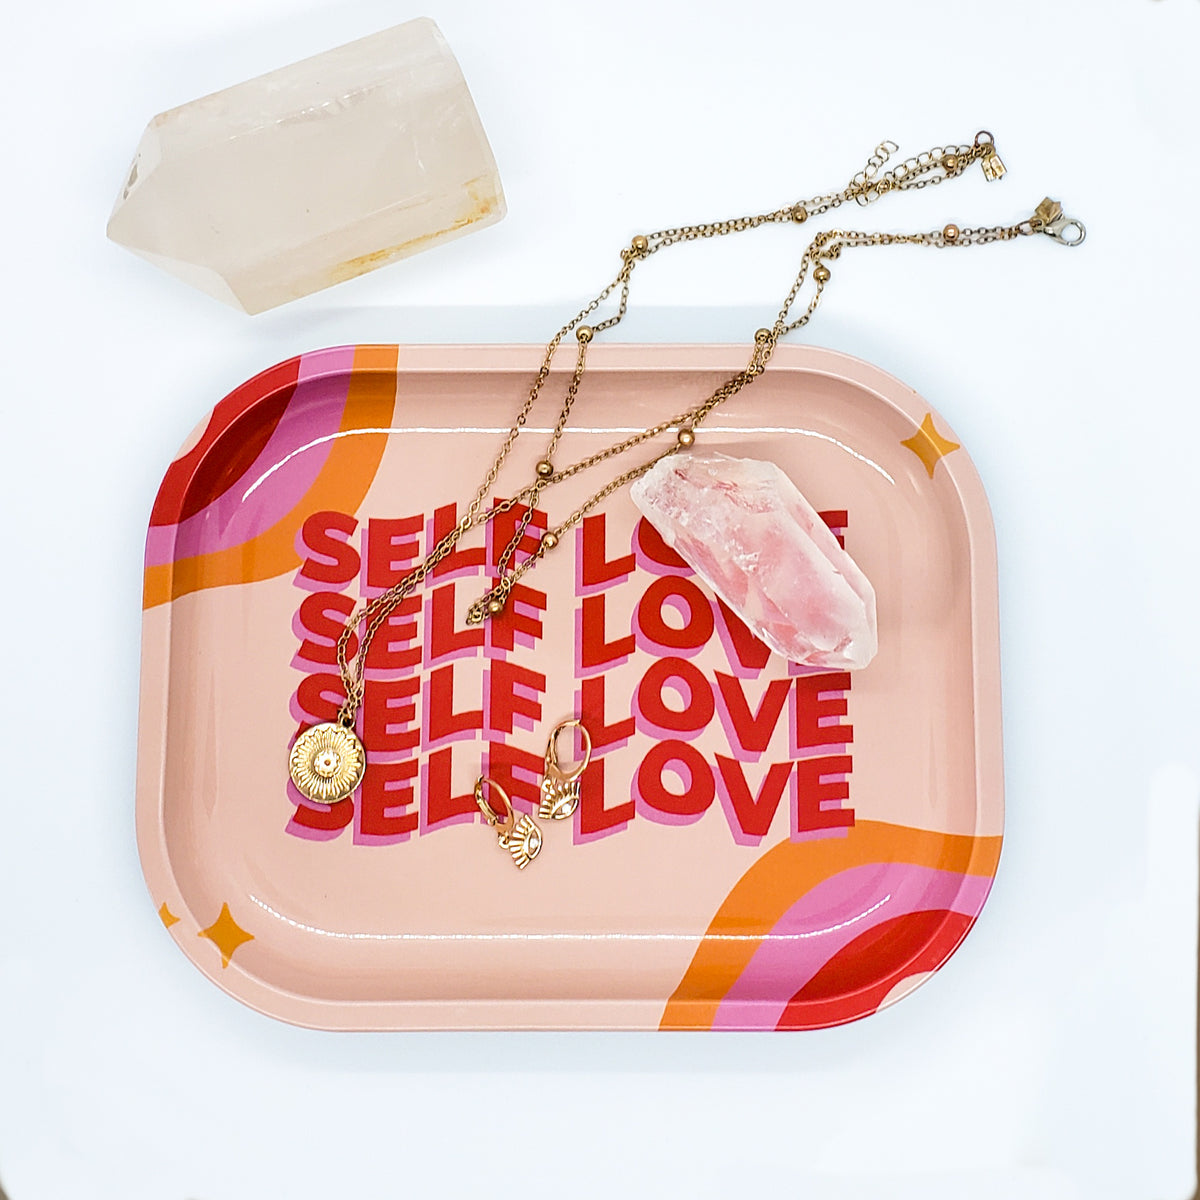 Self Love - Decorative Tray